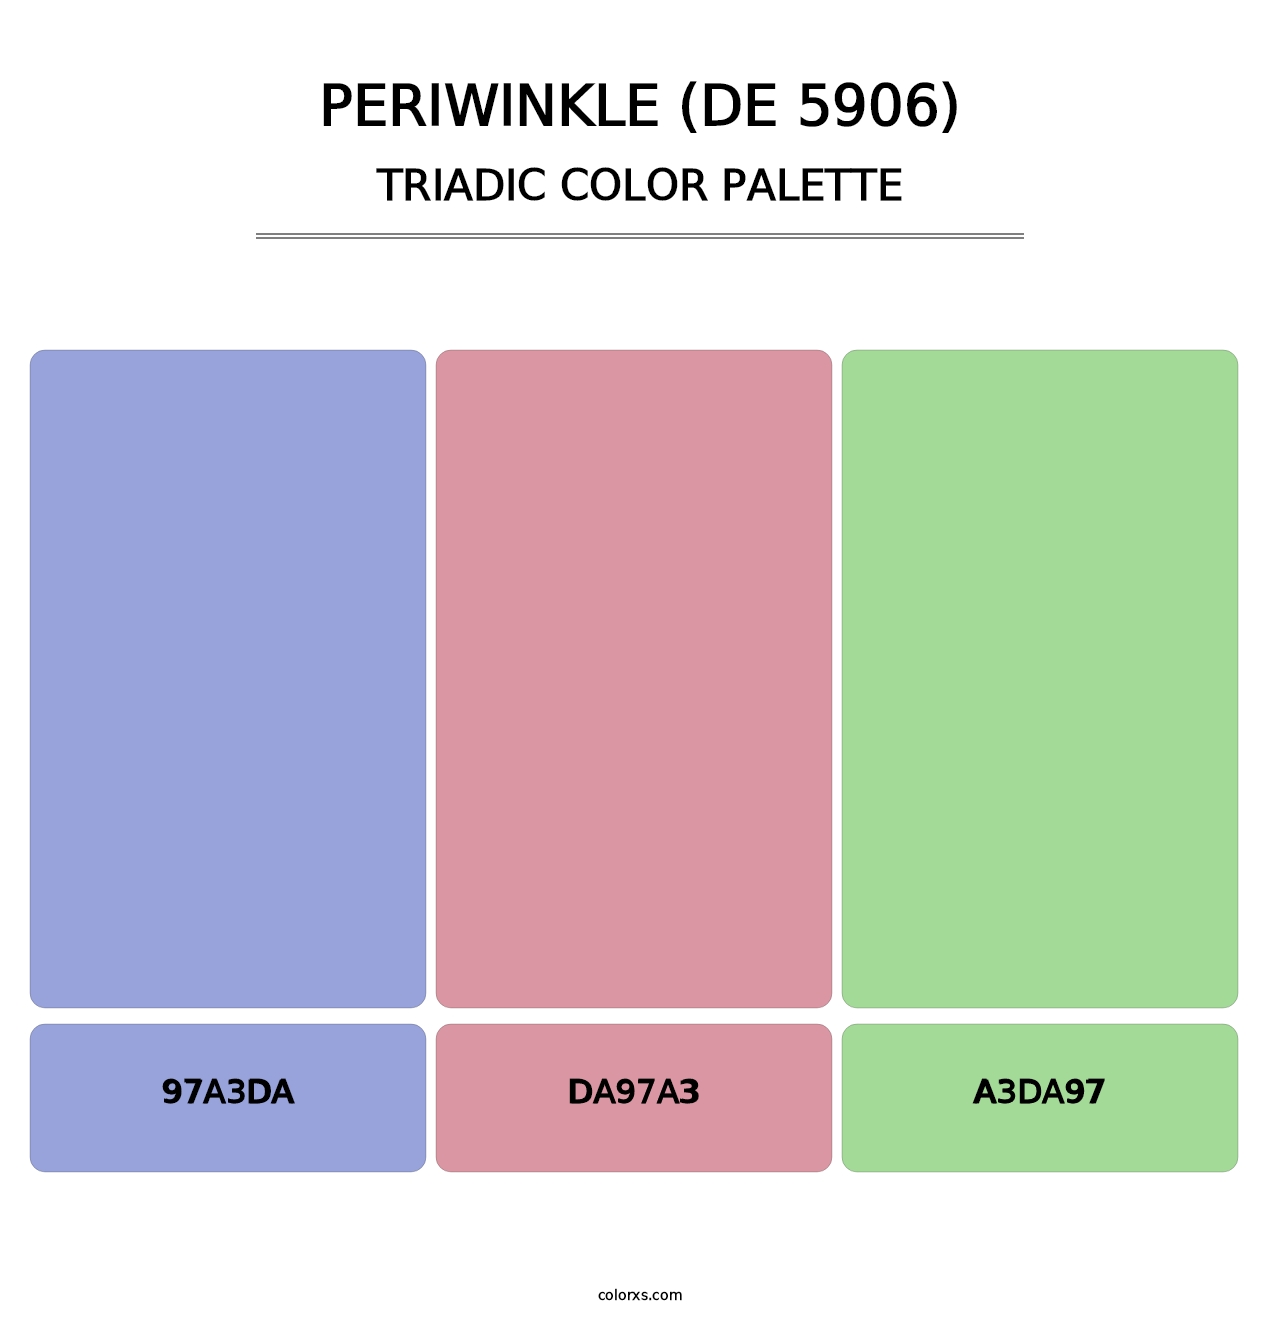 Periwinkle (DE 5906) - Triadic Color Palette